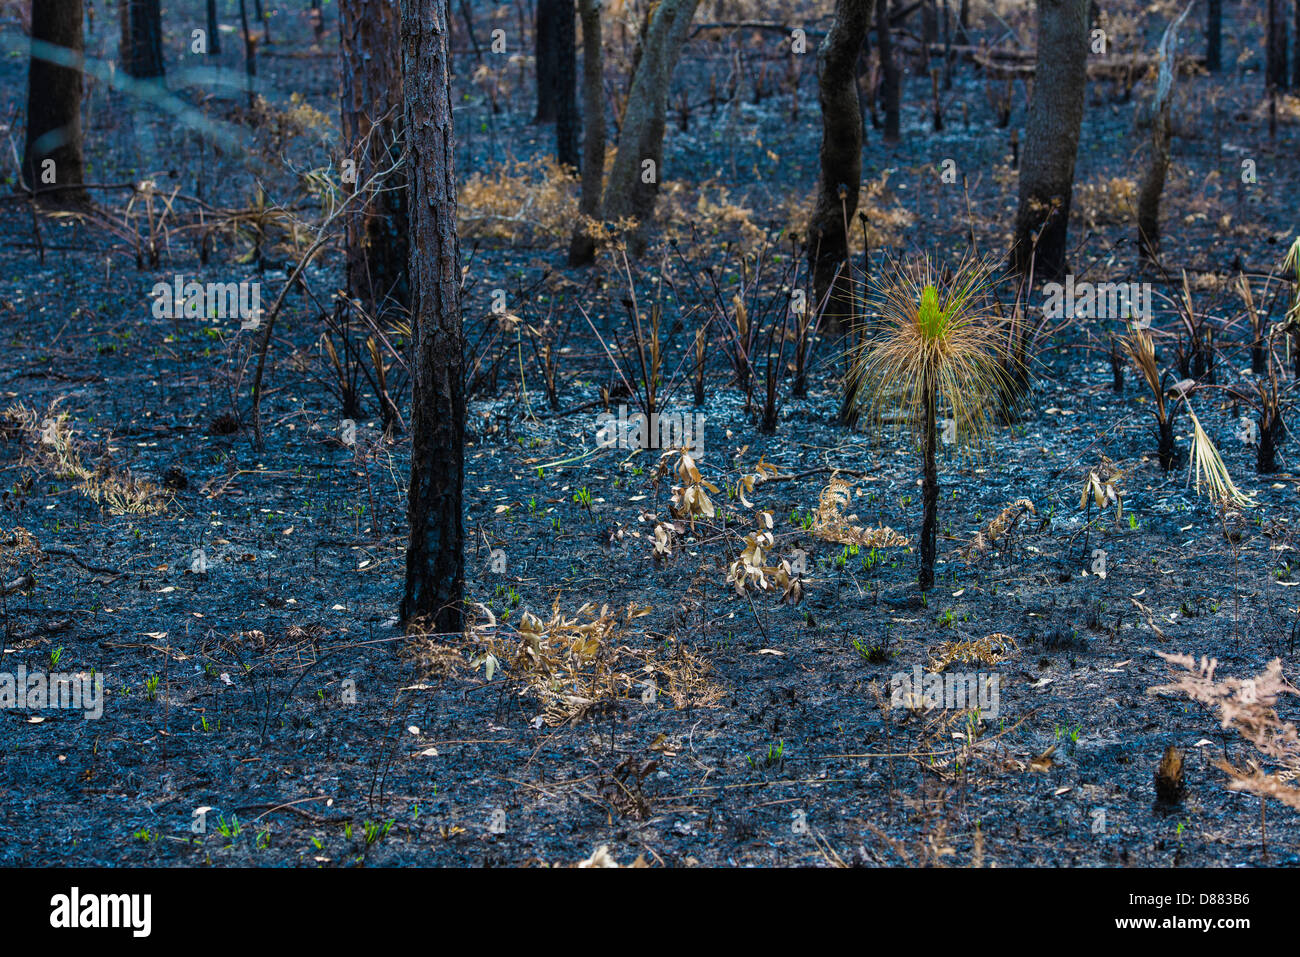 La vie après la mort, un jaillissement des semis de pin up des cendres après un incendie s'est engouffré dans cette forêt. Banque D'Images